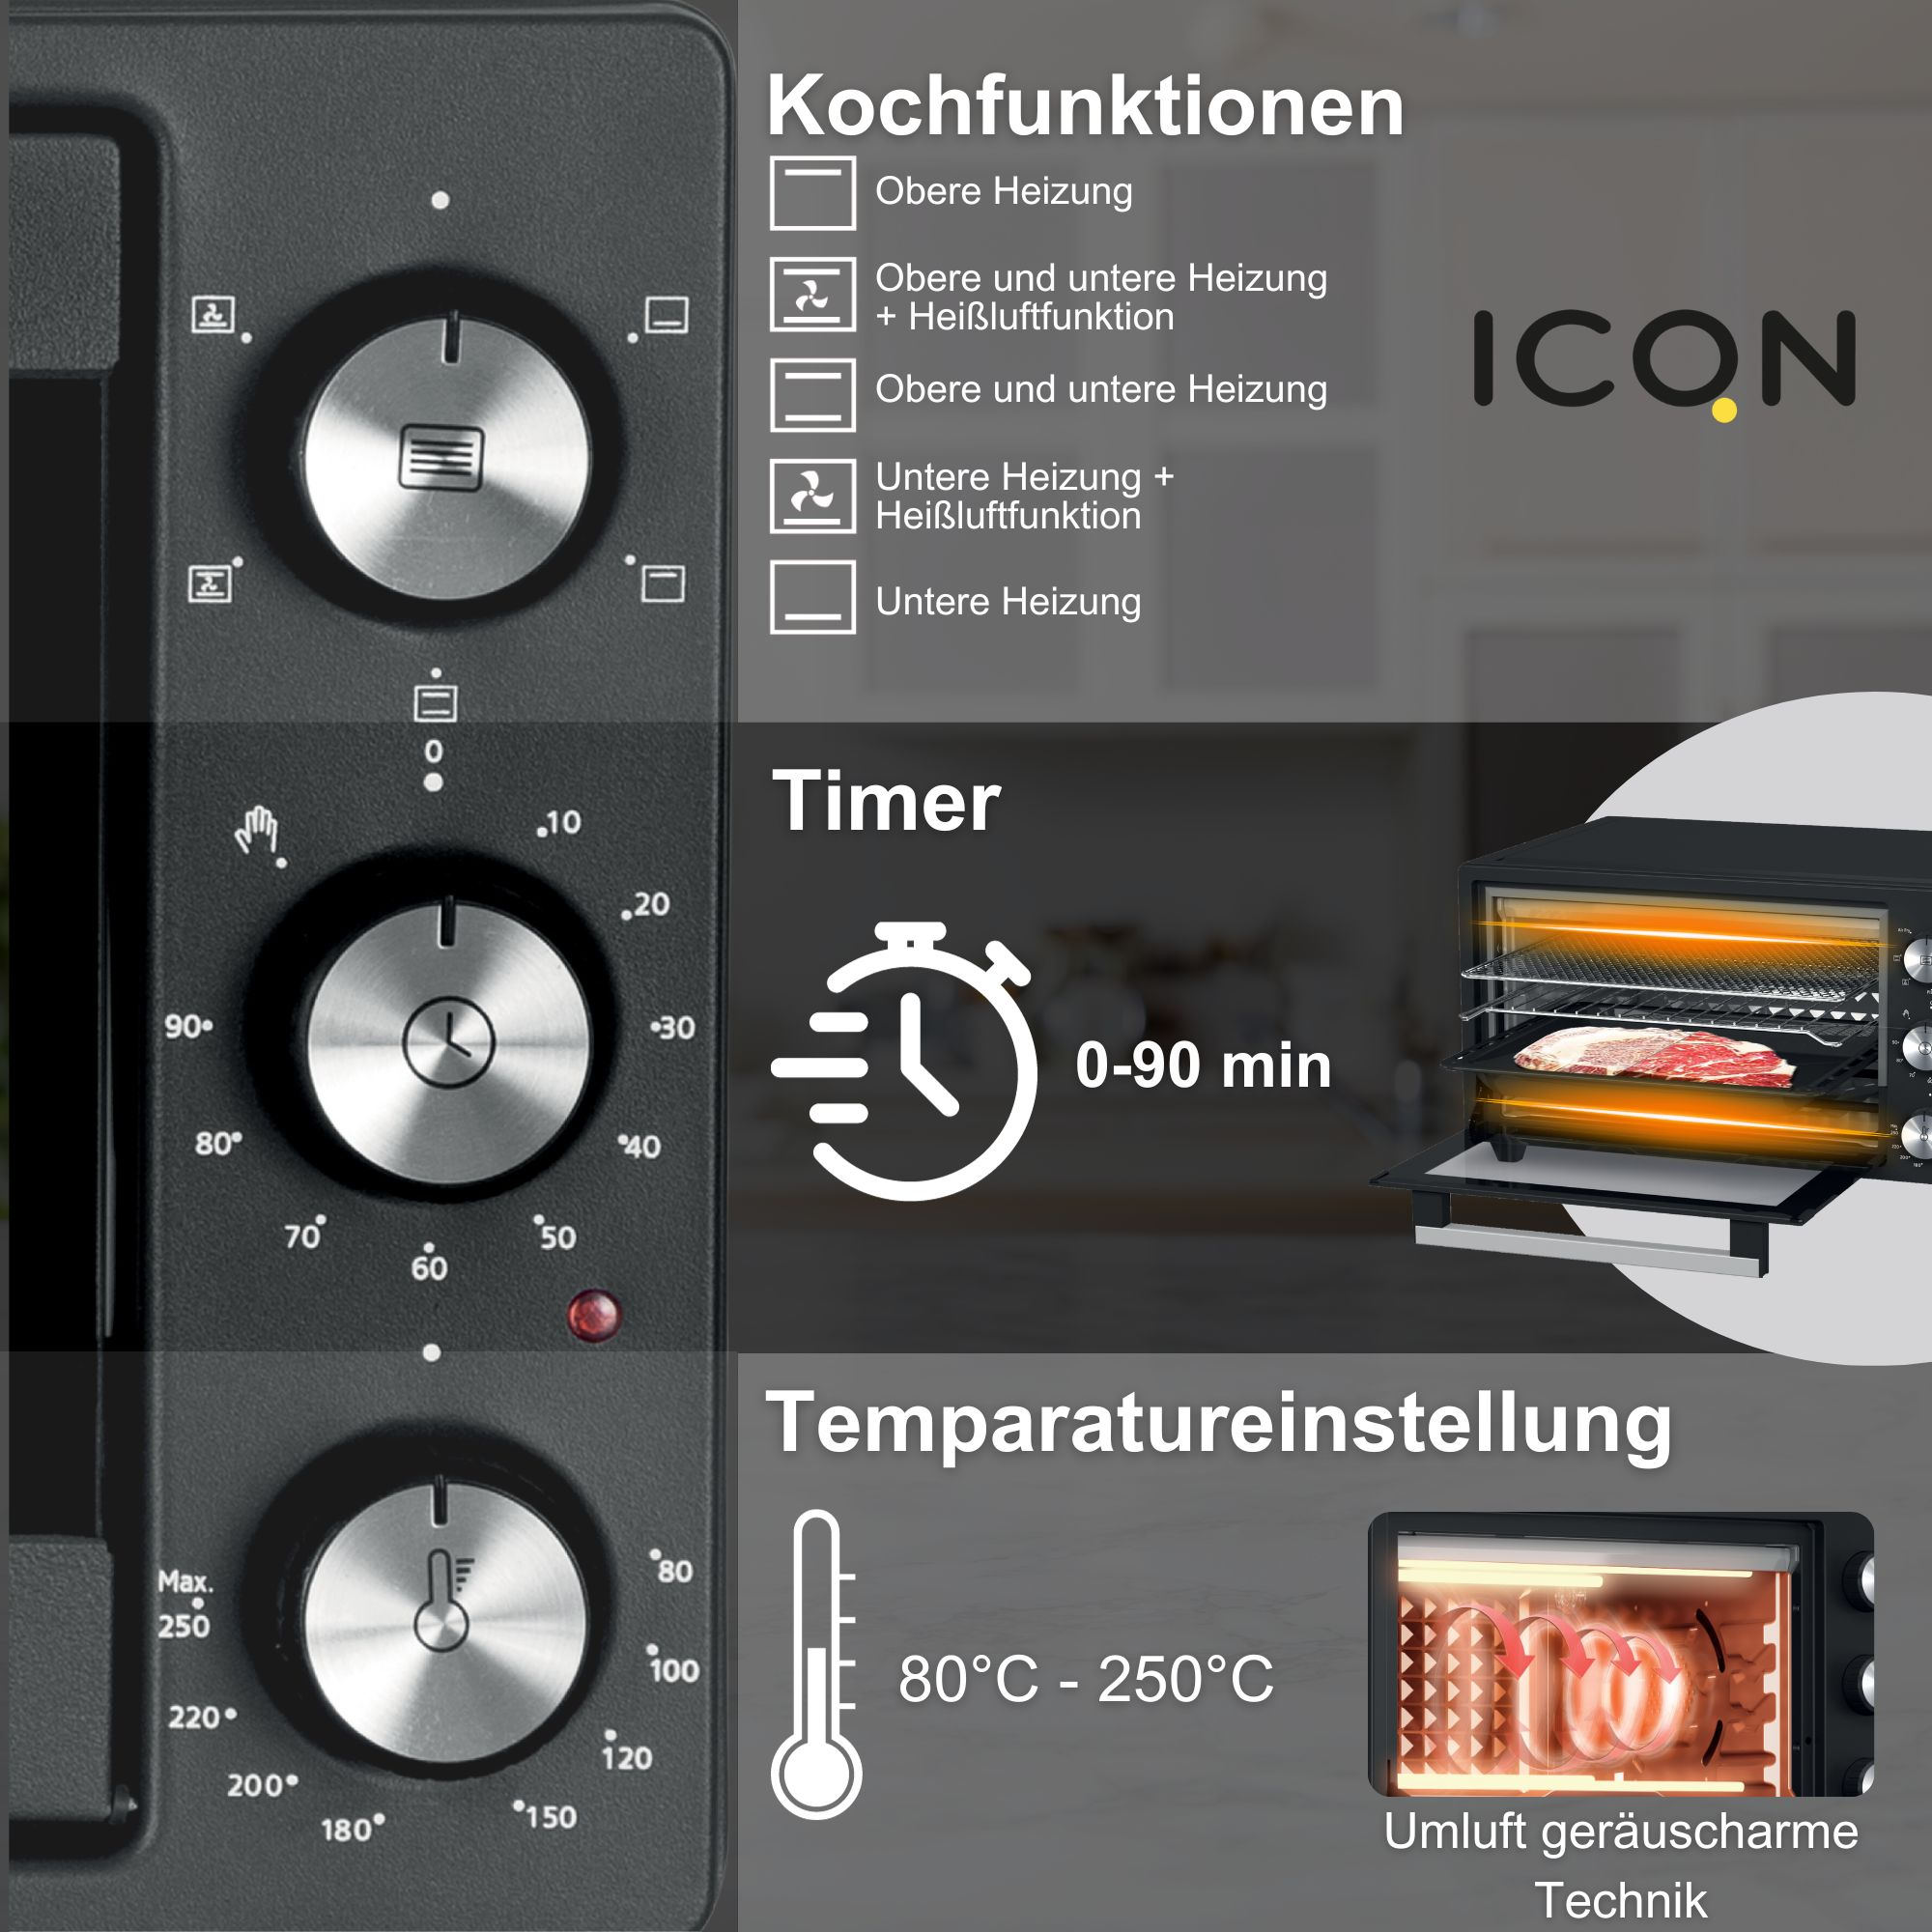 20 90 Timer L, Min. Minibackofen ICQN Grill-Funktion, 80°-250°C, 5 1500 W,